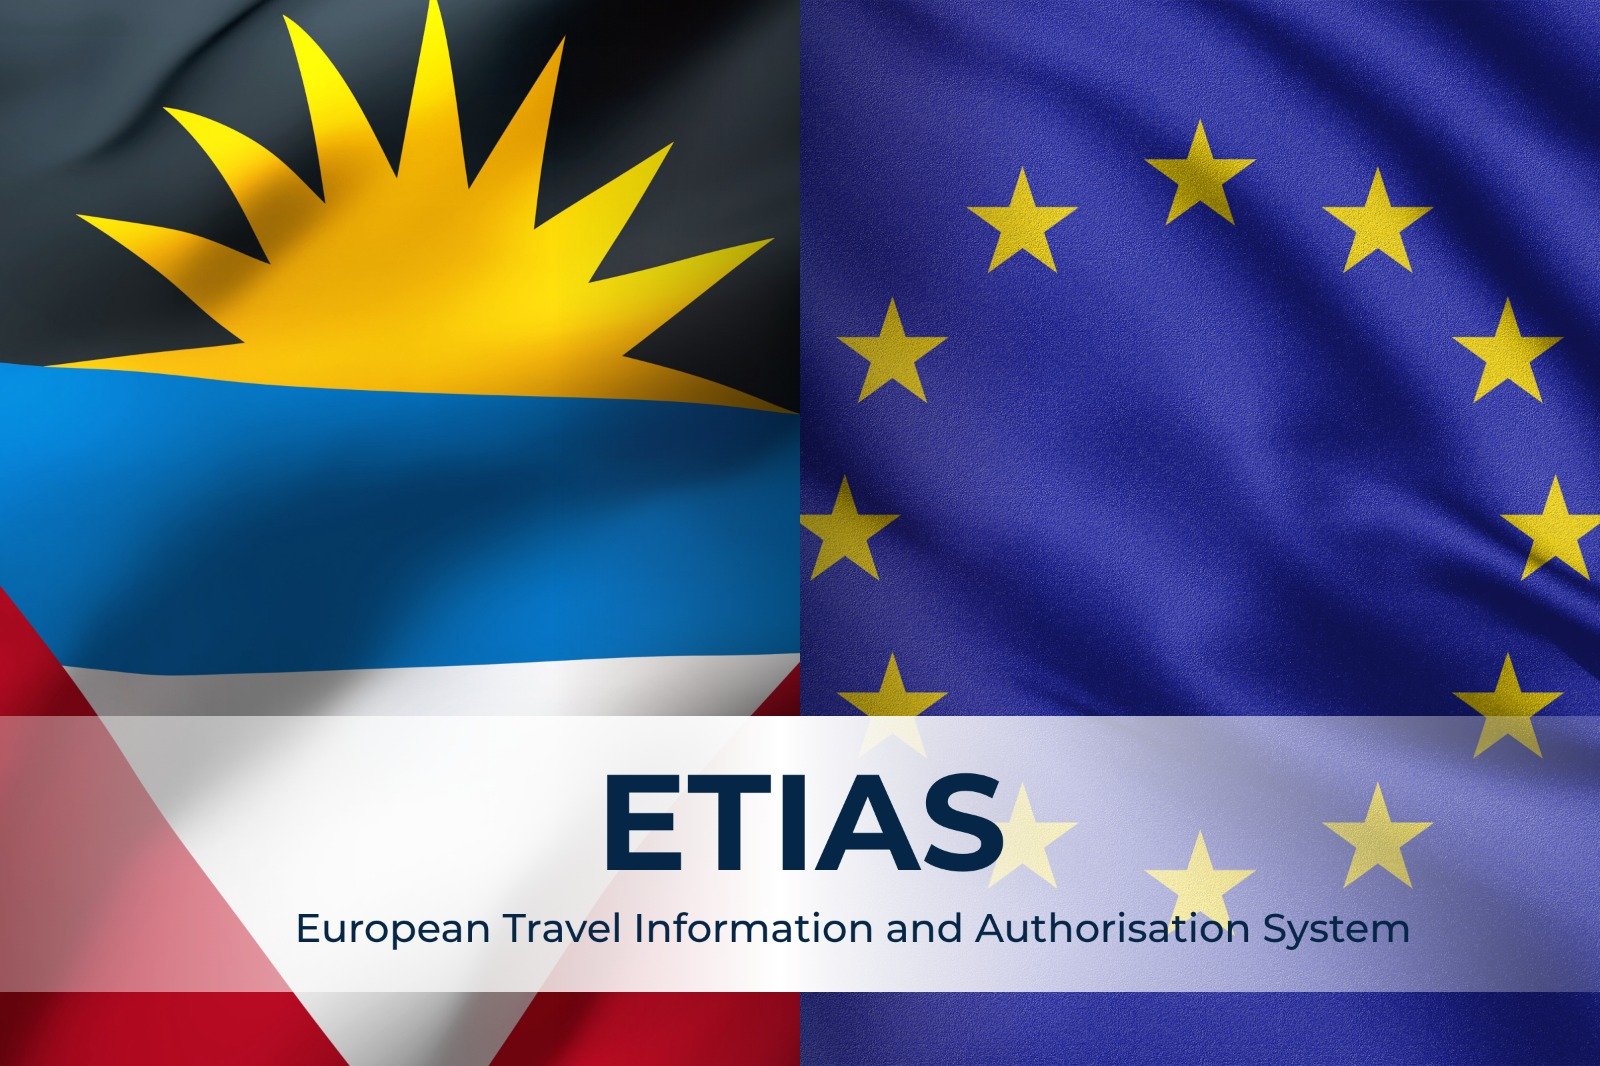 نظام إتياس (ETIAS) وتأثيره على جنسية أنتيغوا وبربودا